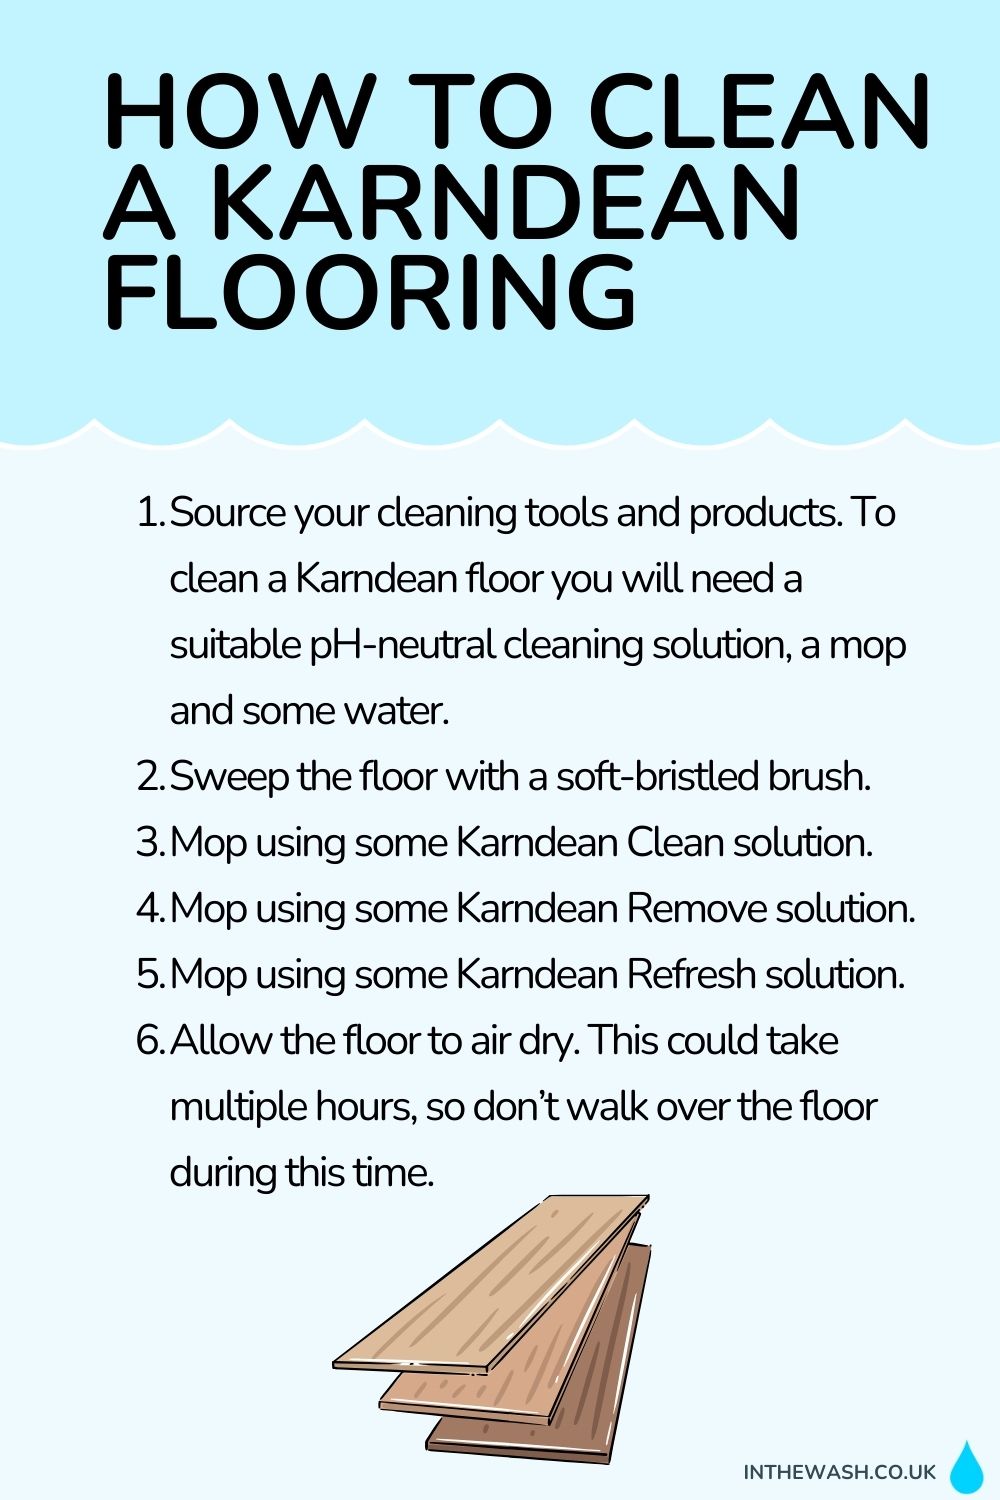 How to clean Karndean flooring step by step